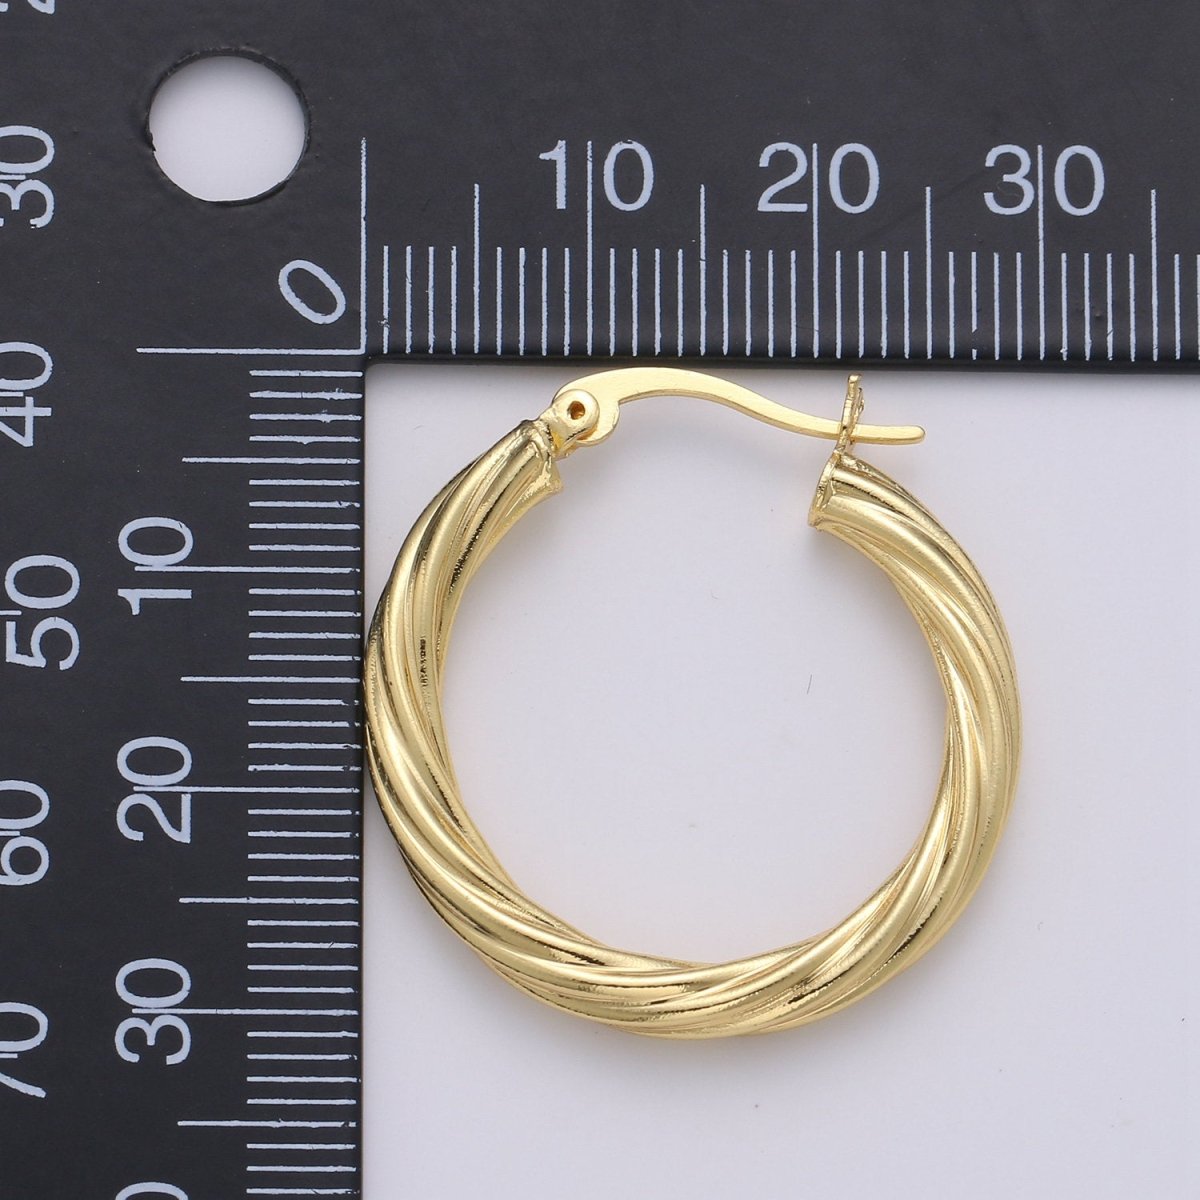 24k Vermeil Gold Earrings, Hoop Earrings, Small Hoop, Circle Rope Texture Earring, Gift for Her, Earrings for Women, Everyday Wear Earrings Q-533 - DLUXCA